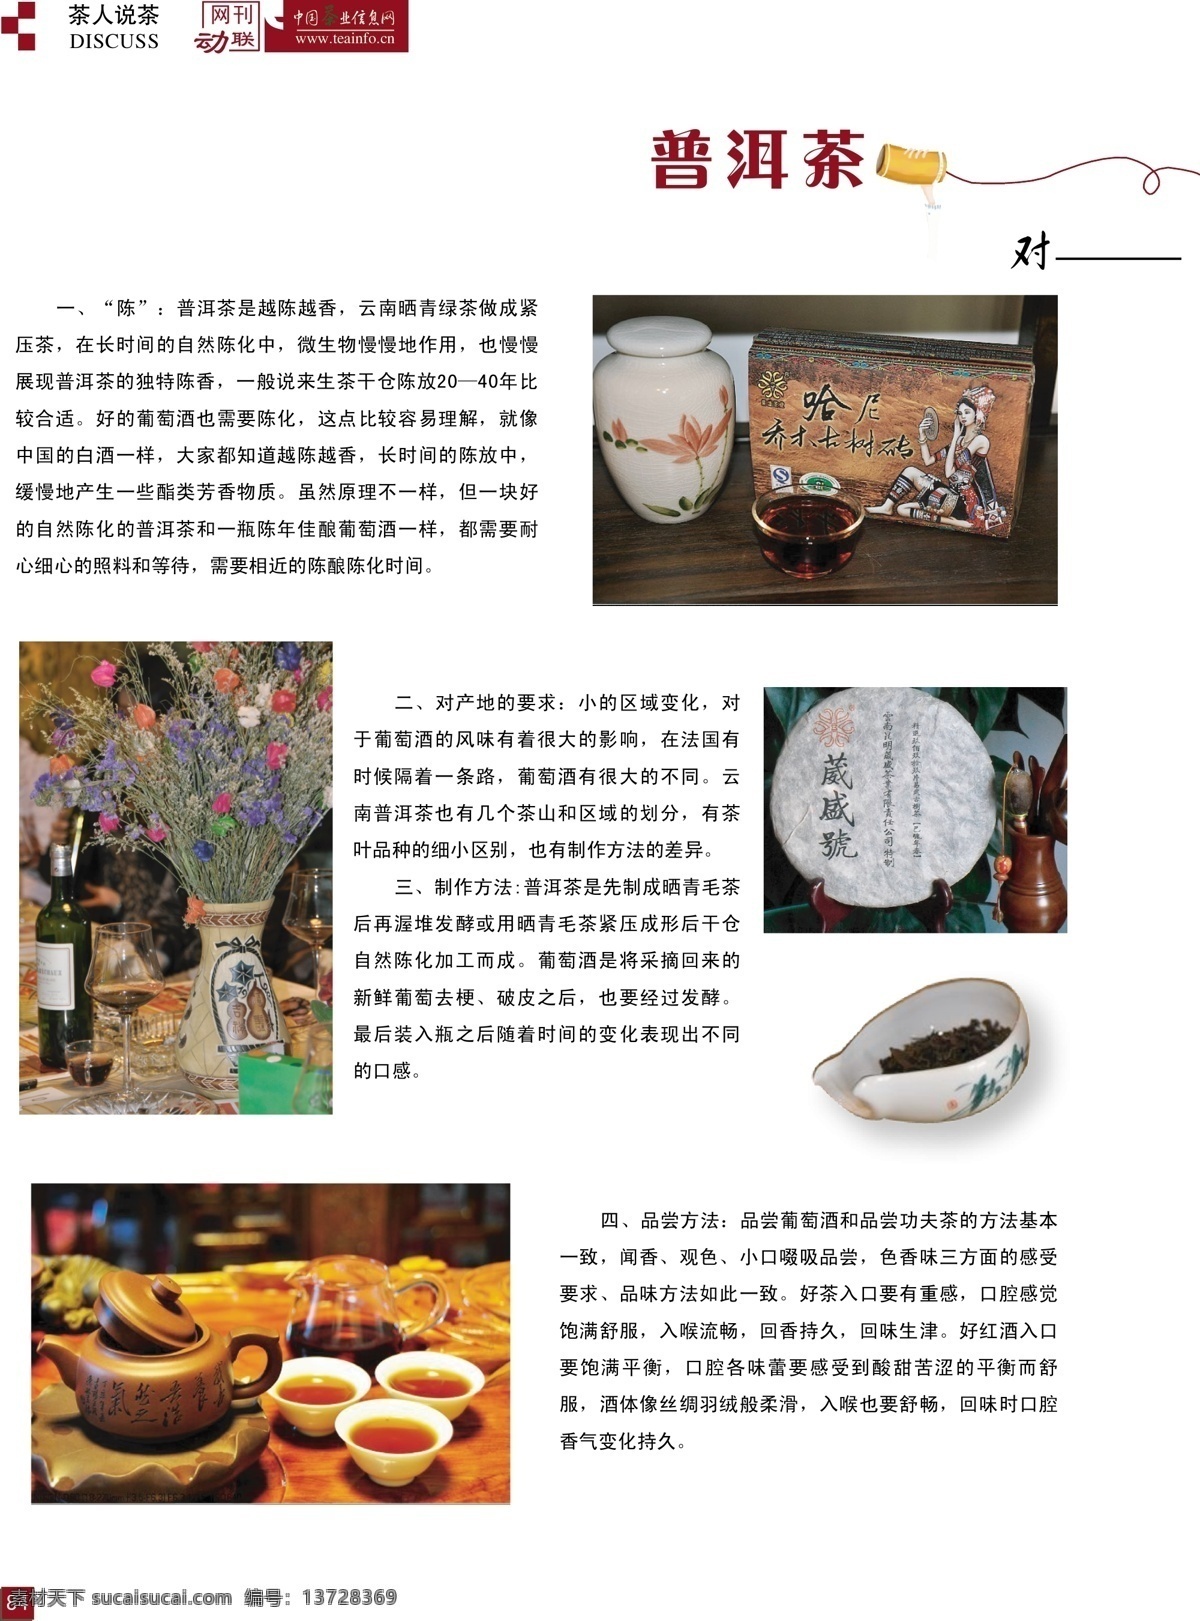 杂志排版 茶杂志 版式设计 包装样式 背景图 对话 话筒 页眉页脚 页码设计 画册设计 矢量